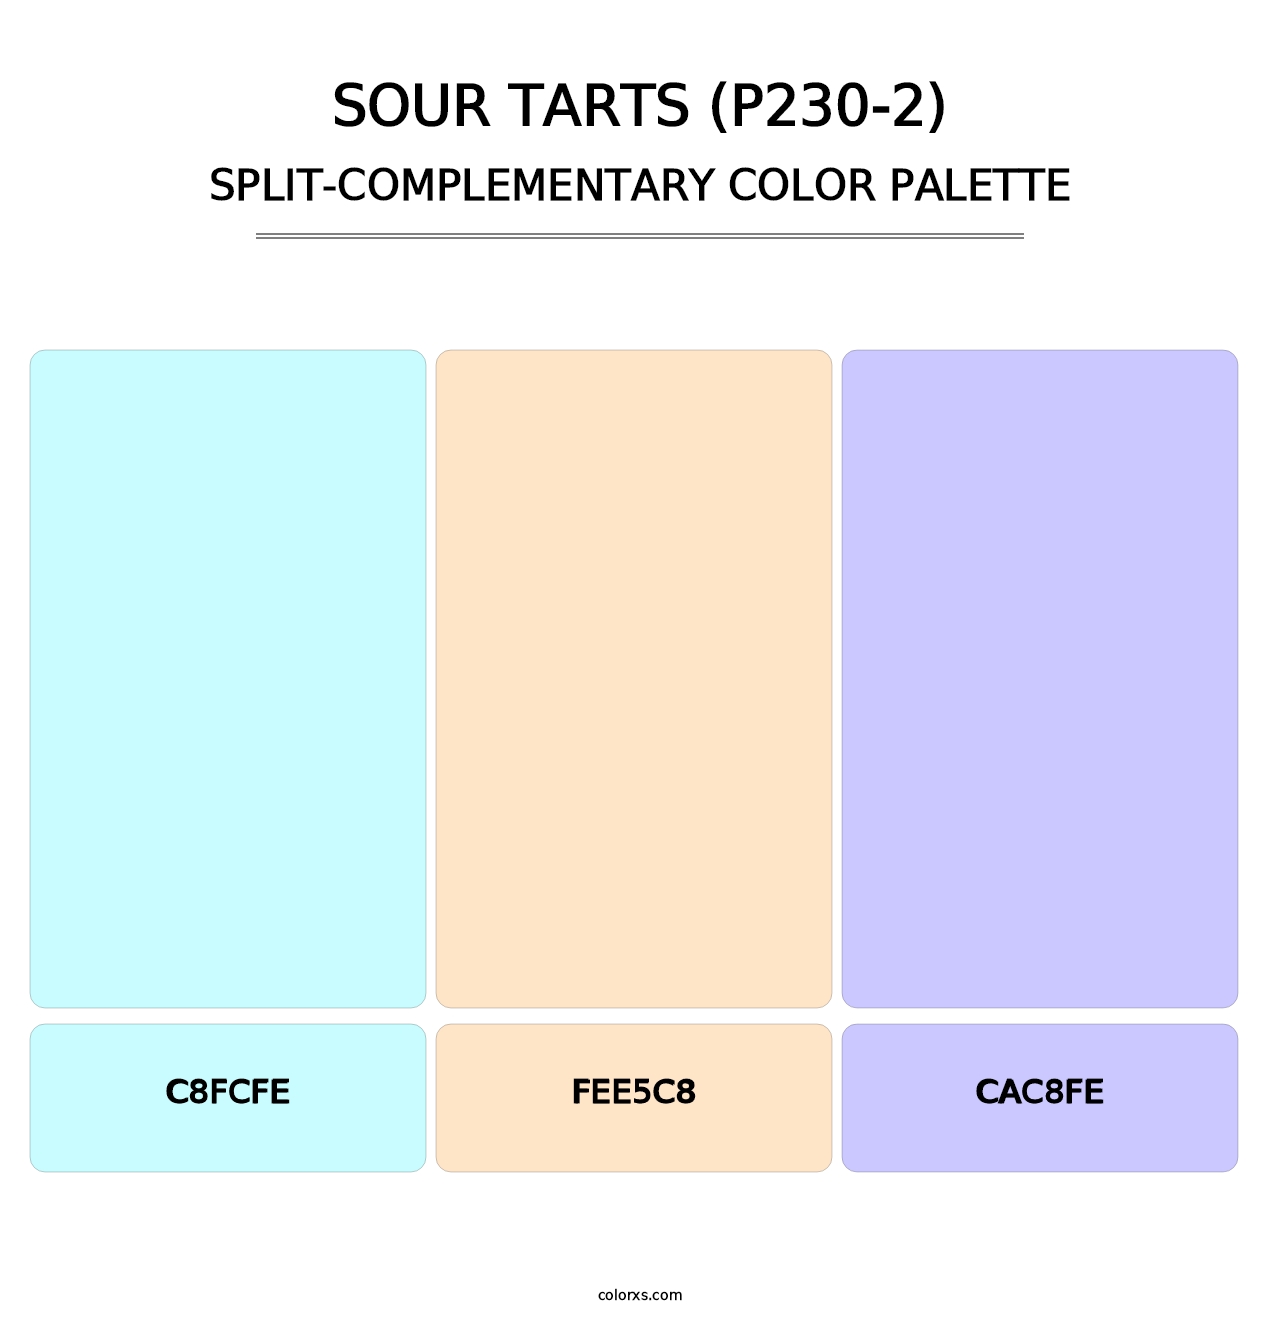 Sour Tarts (P230-2) - Split-Complementary Color Palette